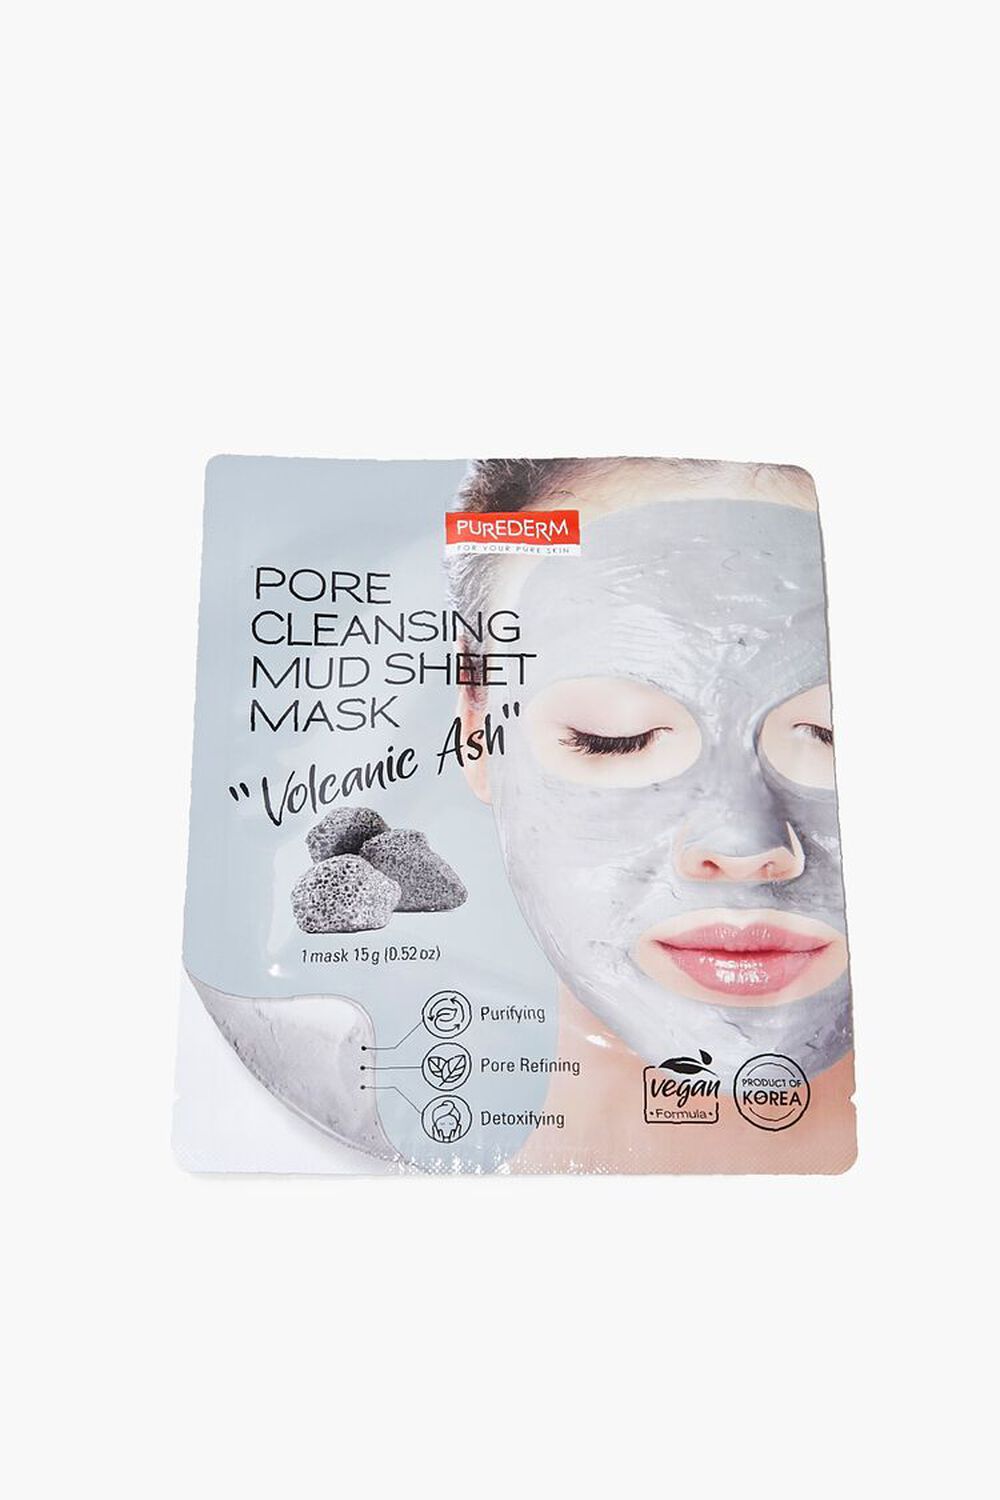 GREY Pore Cleansing Mud Sheet Mask, image 1